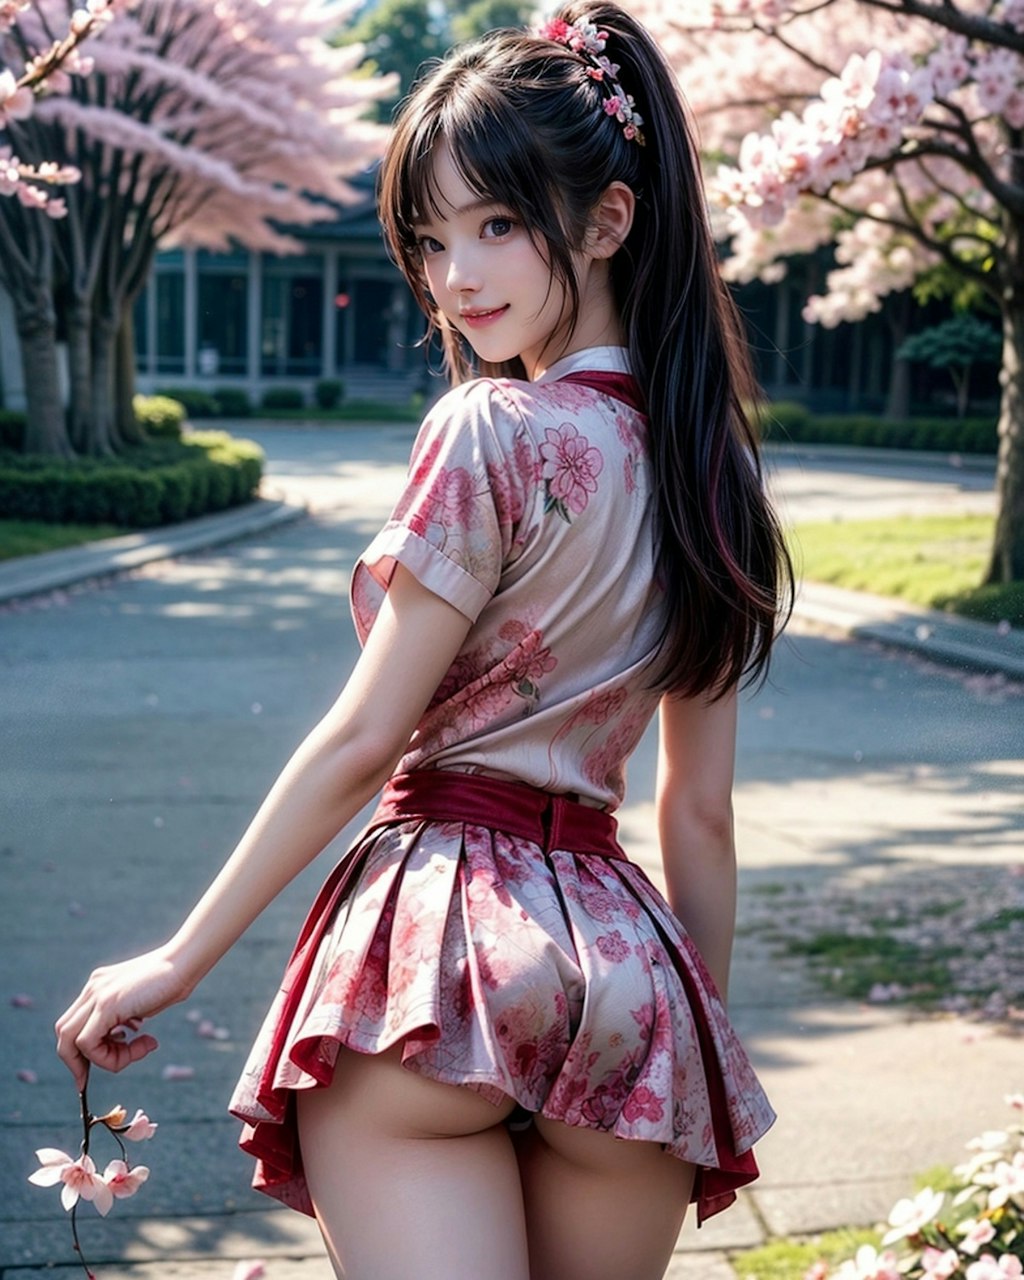 Cherry Blossom Girl